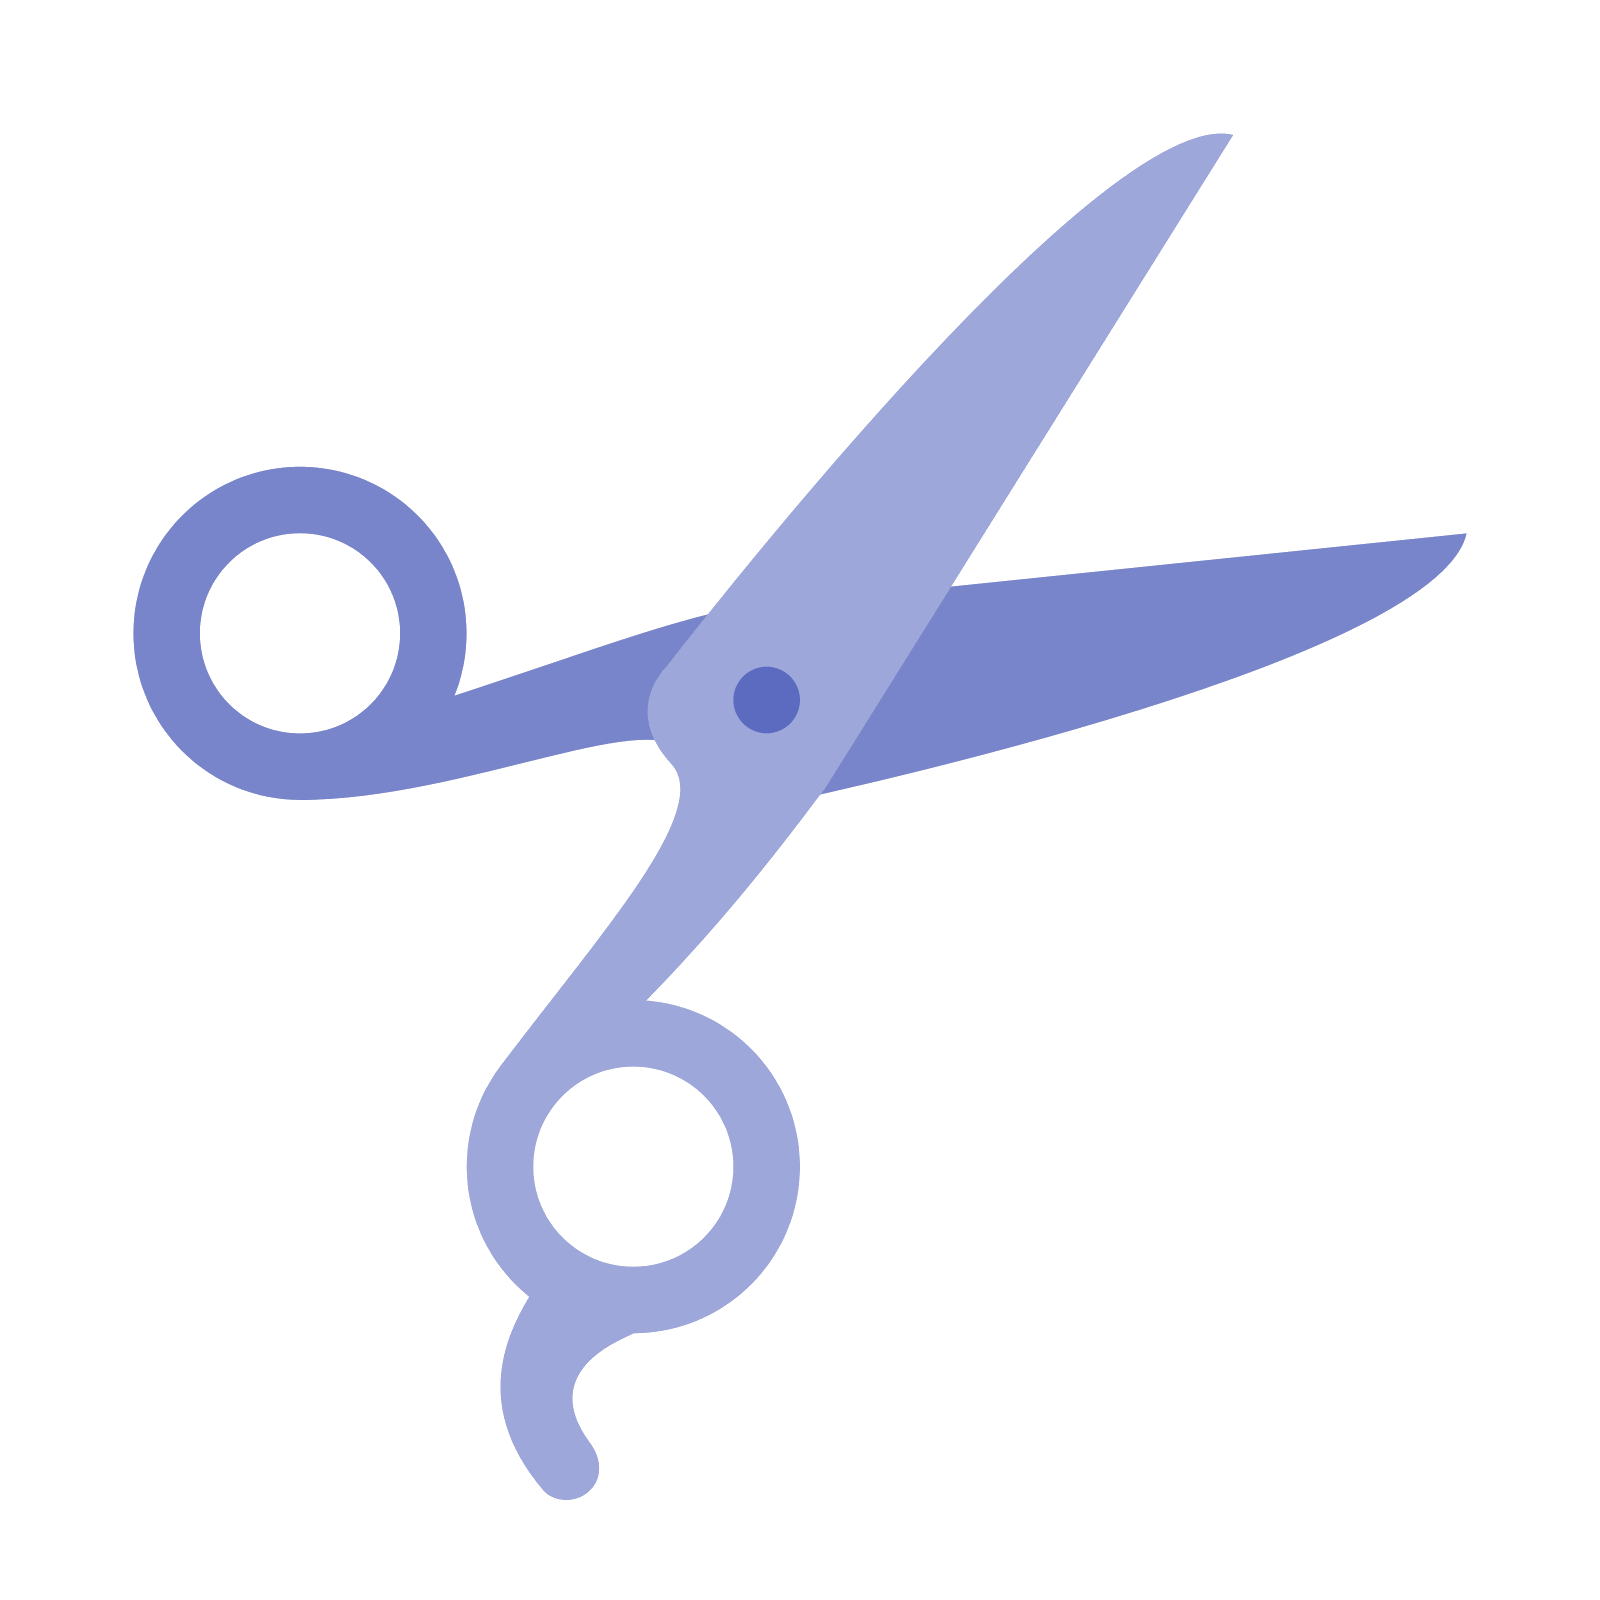 Shears clipart pair scissors. Computer icons hair cutting